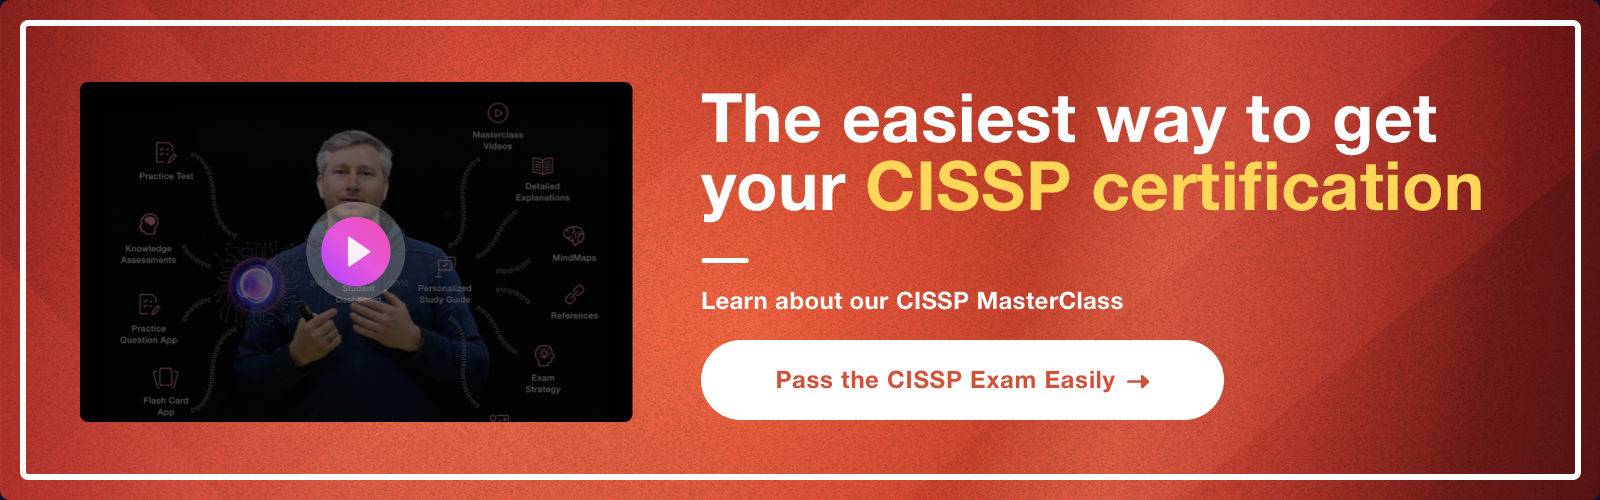 Pass the CISSP exam easily ad - Destination Certification